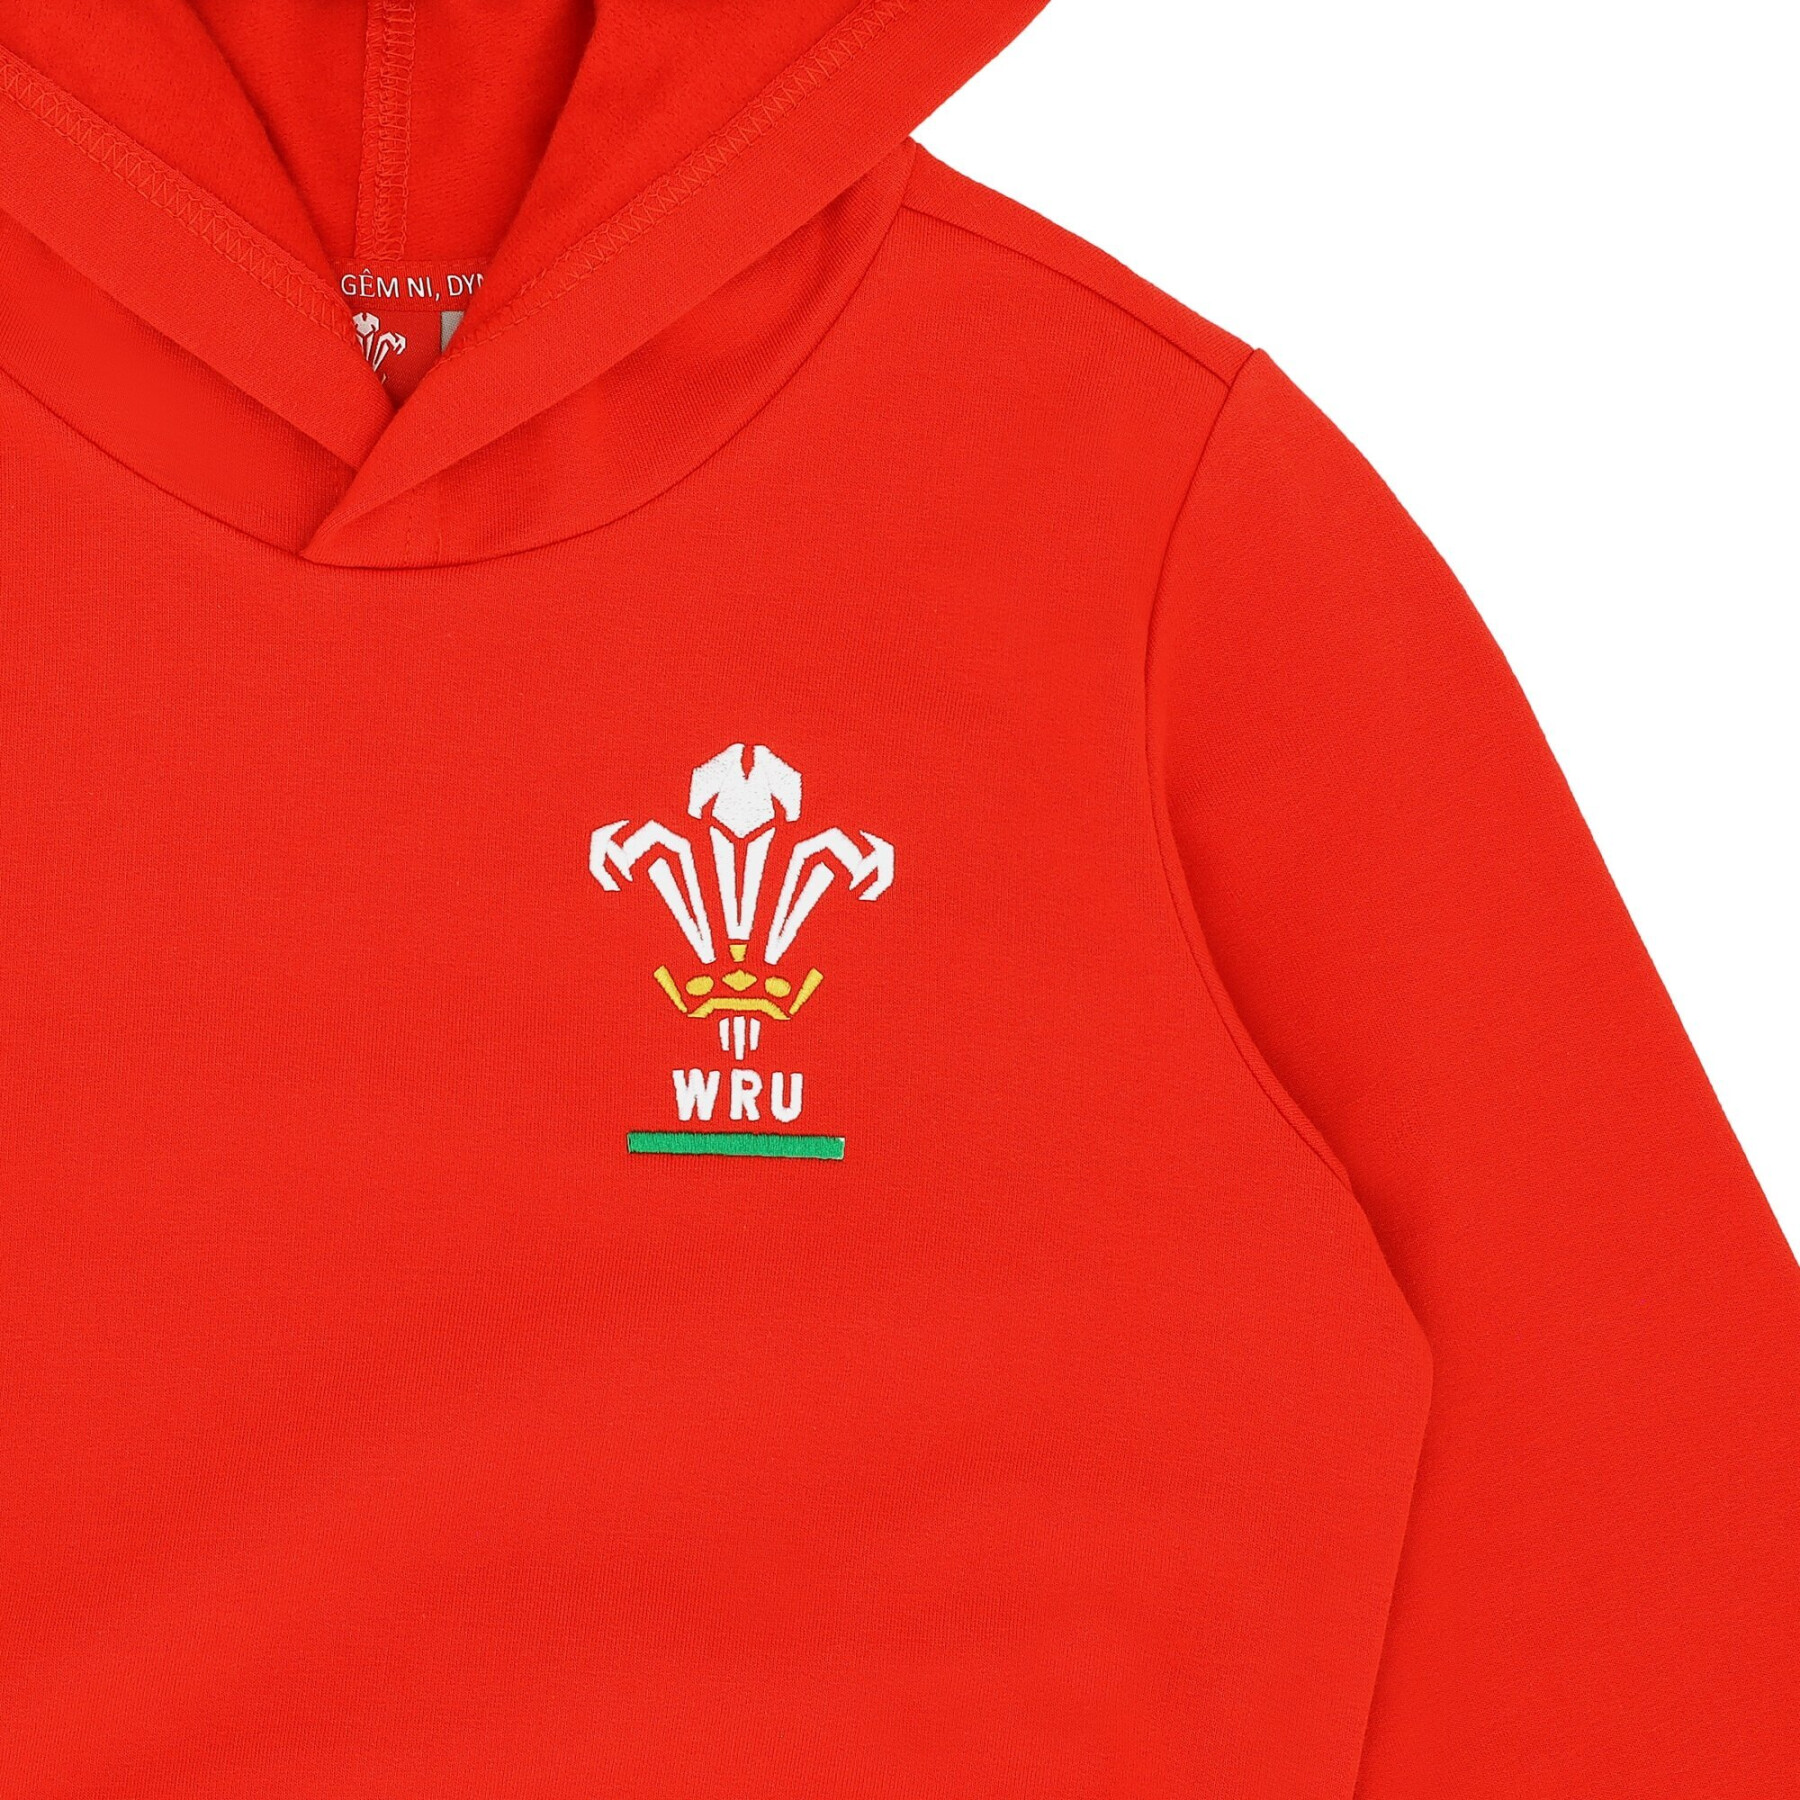 Sweatshirt à capuche enfant Pays de Galles Rugby XV Merch CA Groc